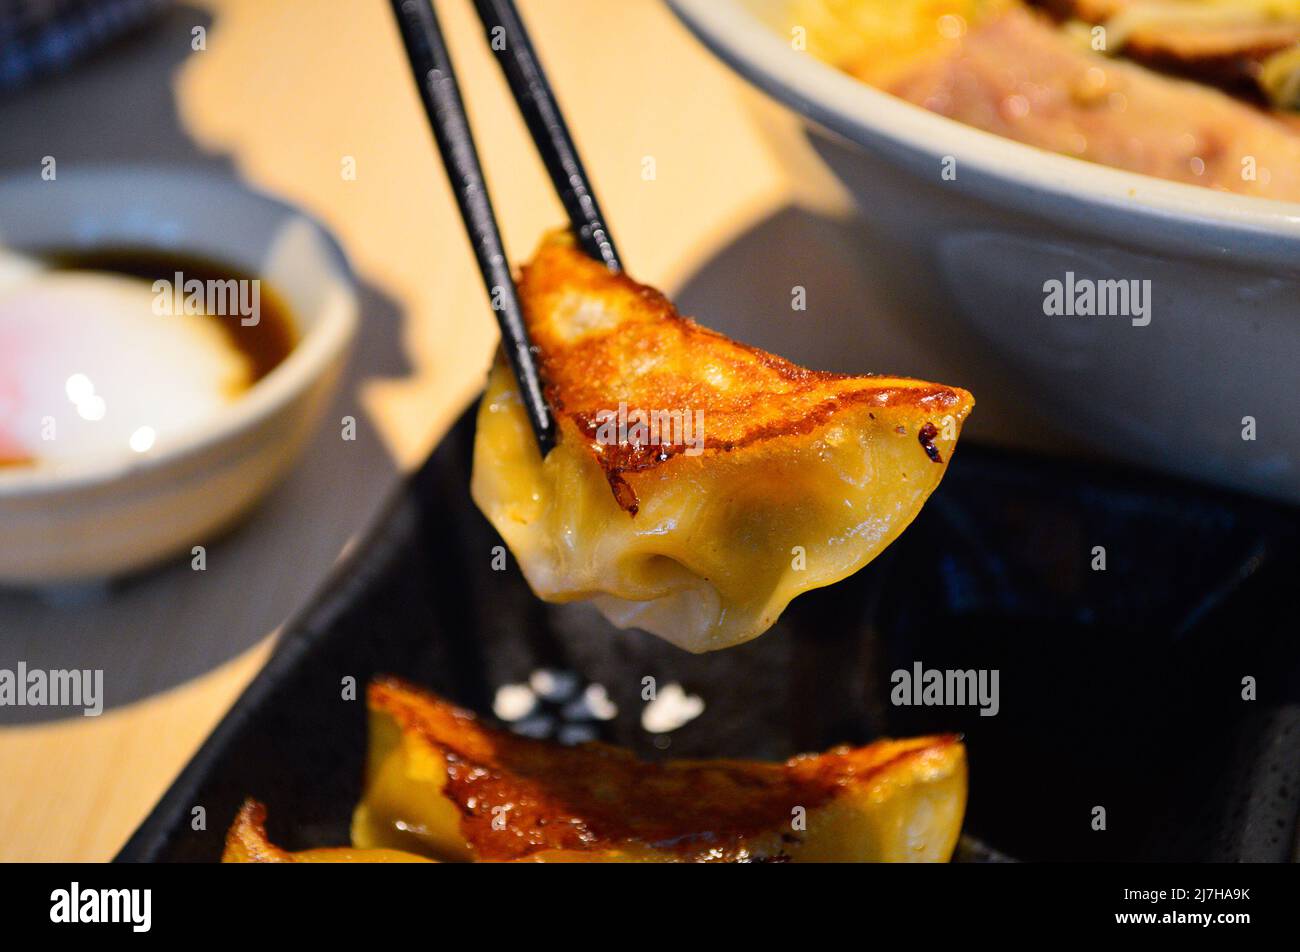 Essstäbchen nehmen frittierte Gyoza (Knödel) japanischer Art von einem schwarzen Teller auf. Stockfoto